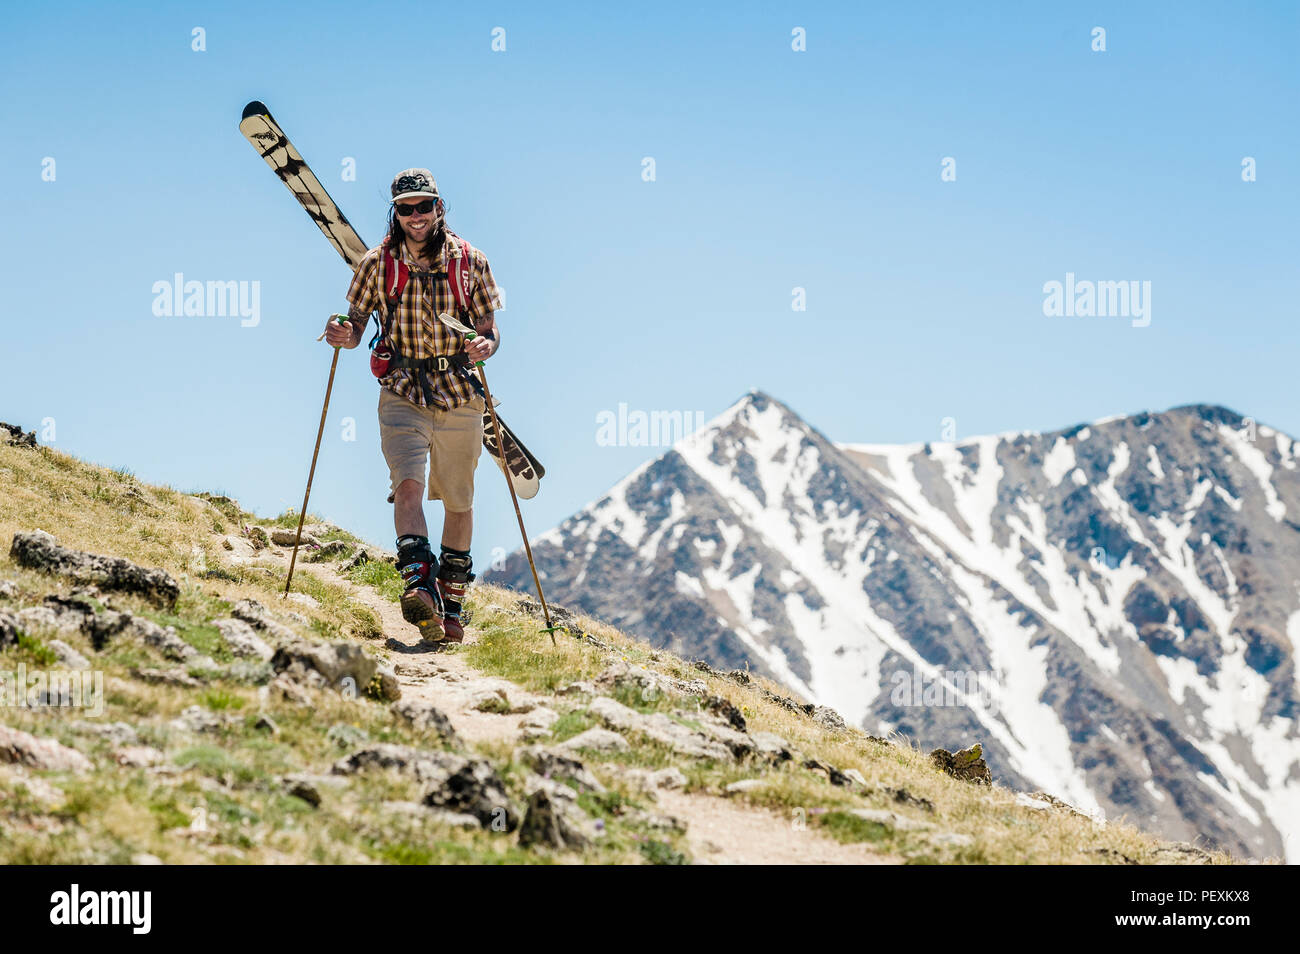 Man hiking with skis, La Plata Mountains, Colorado, USA Stock Photo